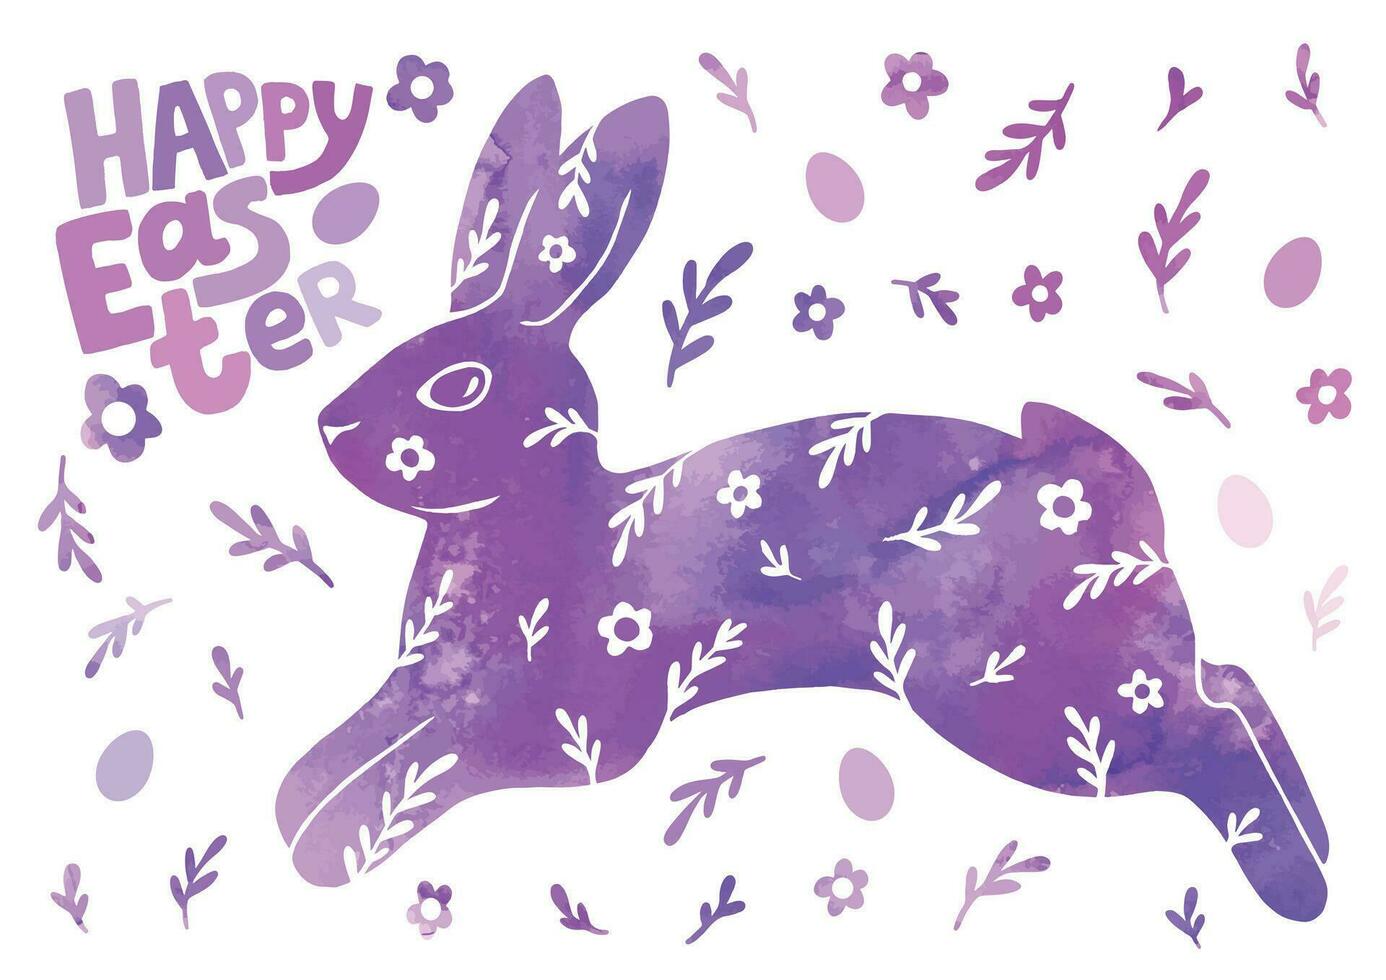 contento Pascua de Resurrección tarjeta. acuarela dibujo de un conejo, flores, huevos, y texto. amable hermosa vector ilustración.